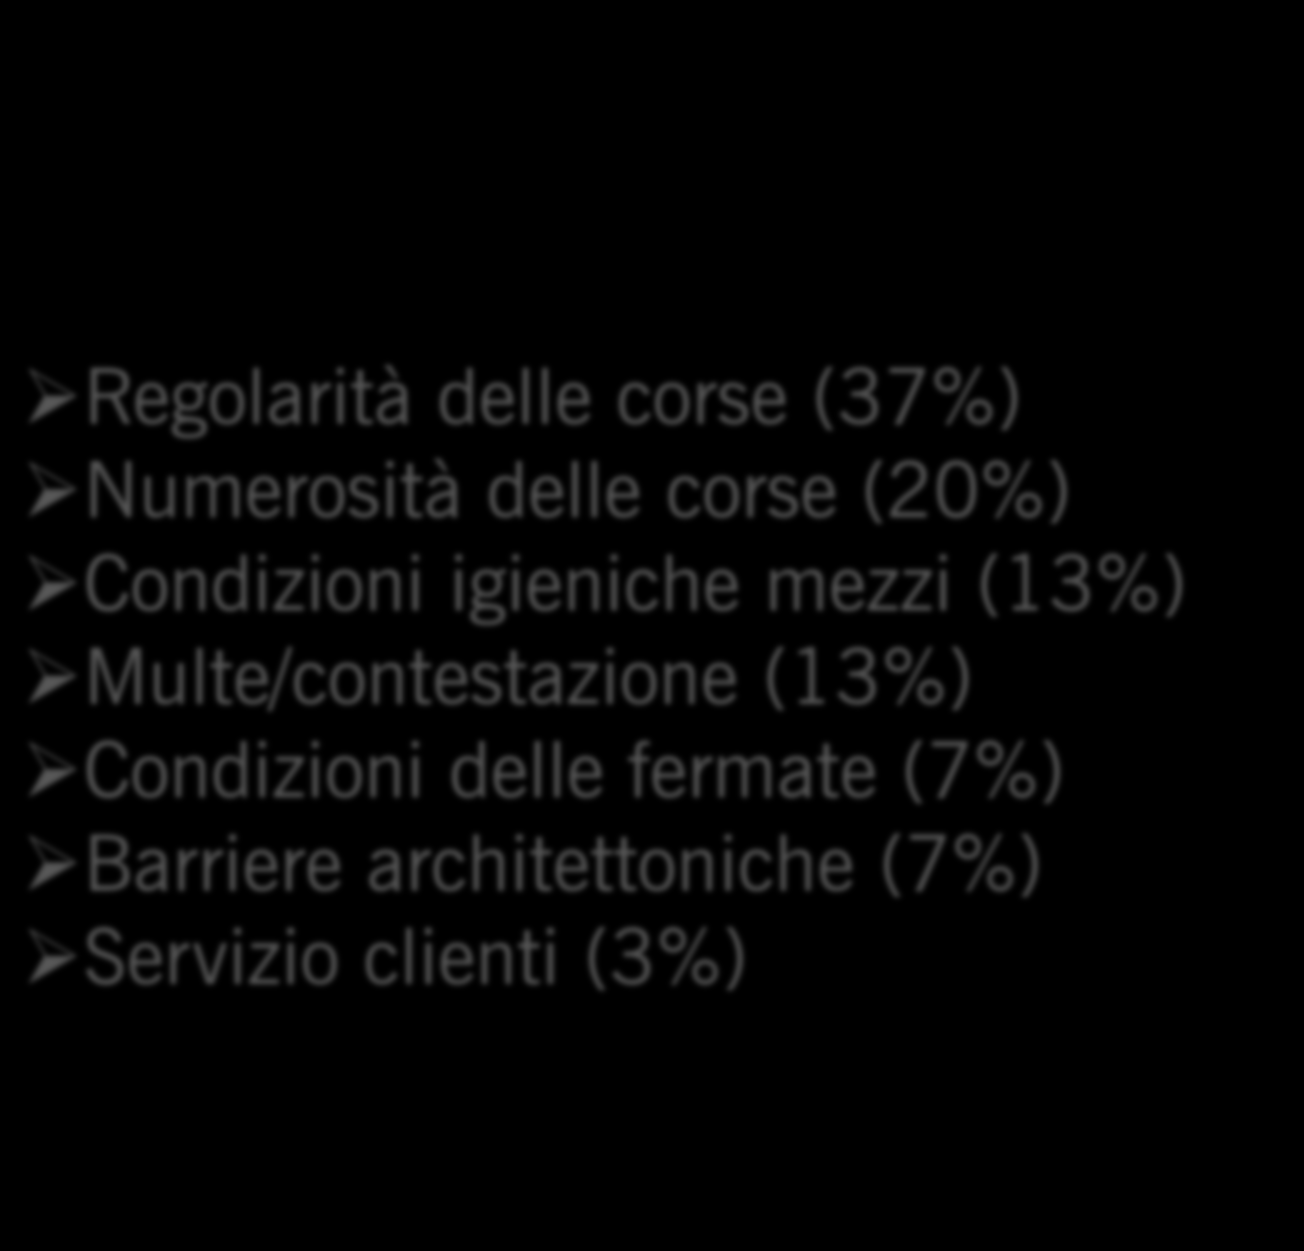 igieniche mezzi (13%) Multe/contestazione (13%) Condizioni